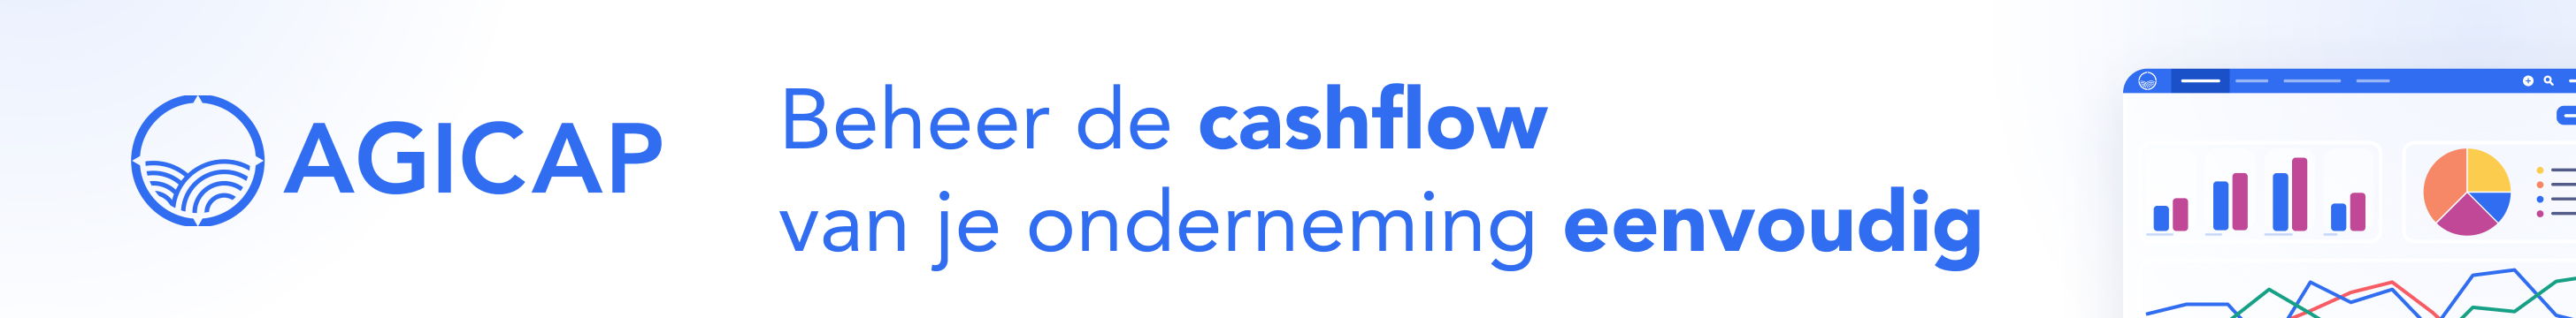 Waarom cashflowbeheer zo belangrijk is: “Als ondernemer heb je geen zekerheid, maar kan je wel de onzekerheid zoveel mogelijk beperken”